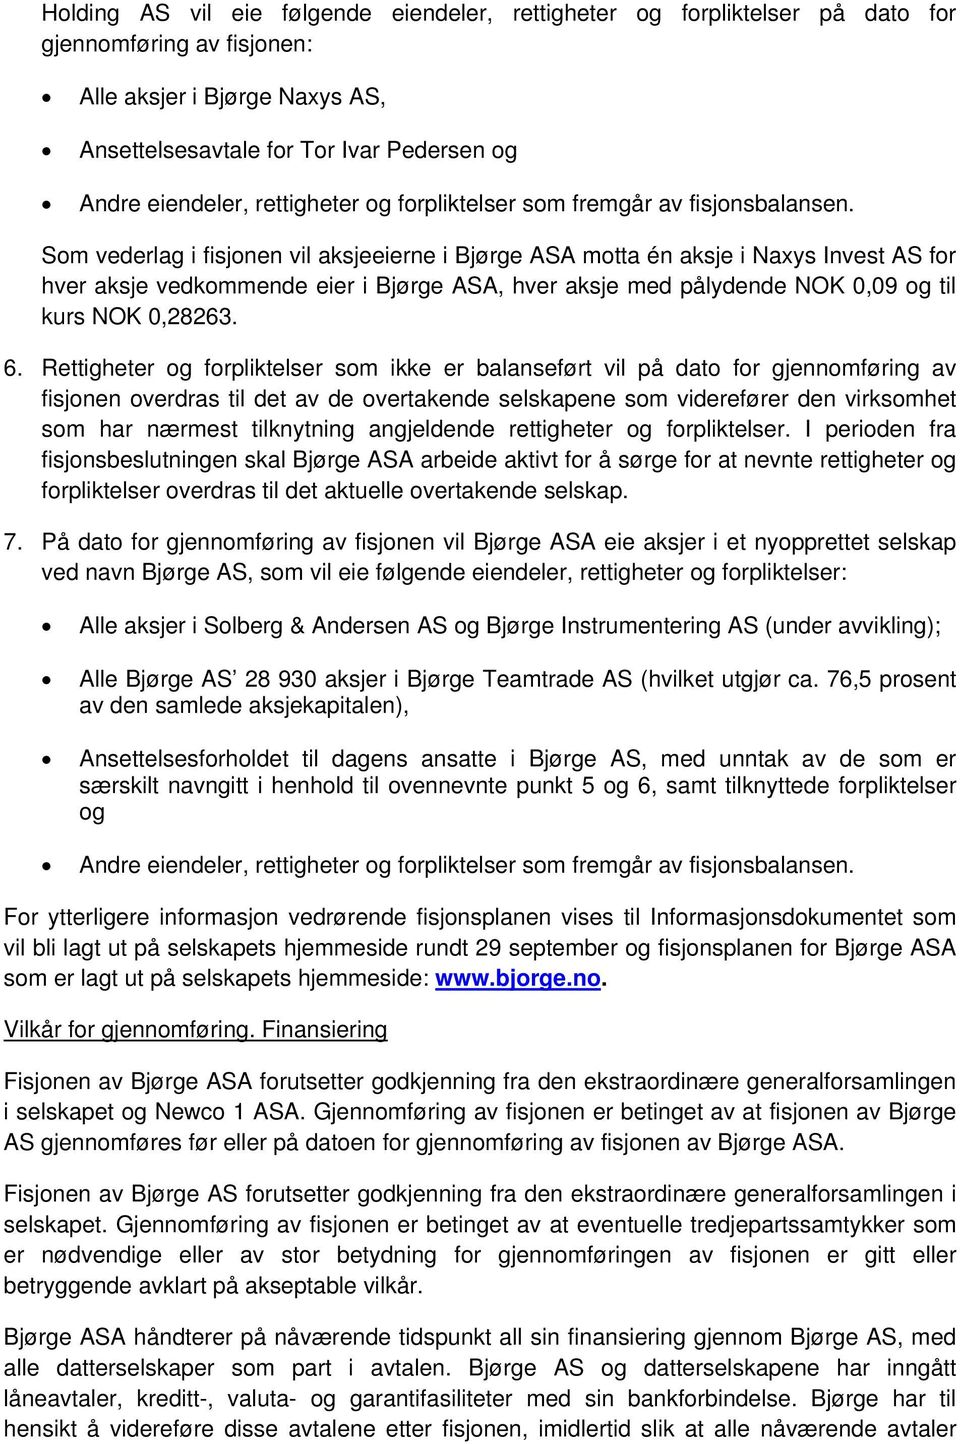 Som vederlag i fisjonen vil aksjeeierne i Bjørge ASA motta én aksje i Naxys Invest AS for hver aksje vedkommende eier i Bjørge ASA, hver aksje med pålydende NOK 0,09 og til kurs NOK 0,28263. 6.